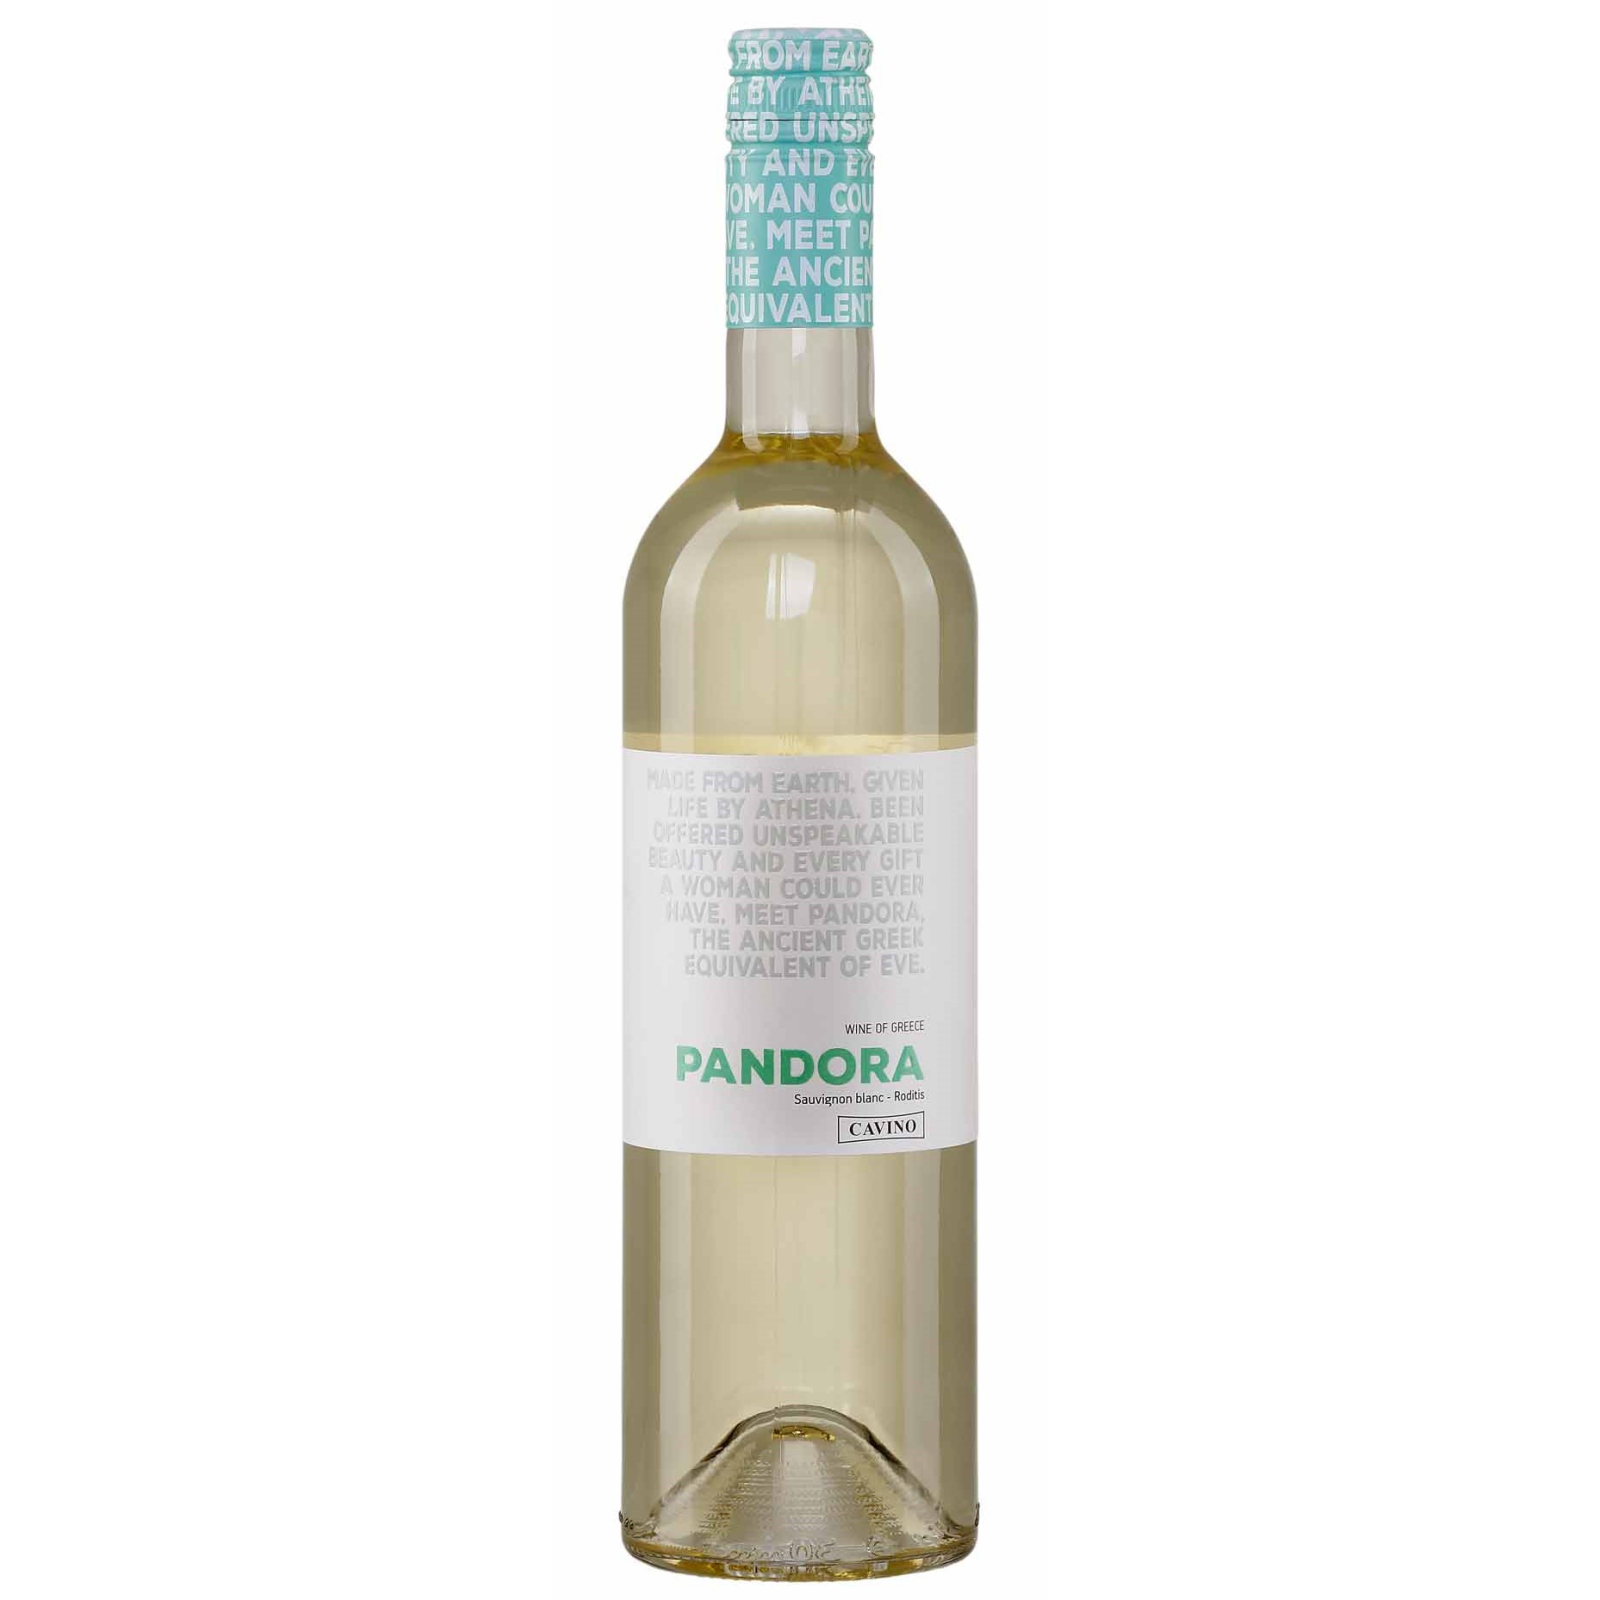 Pandora weiß halbtrocken 0,75l Cavino, 4,99 € | Weißweine